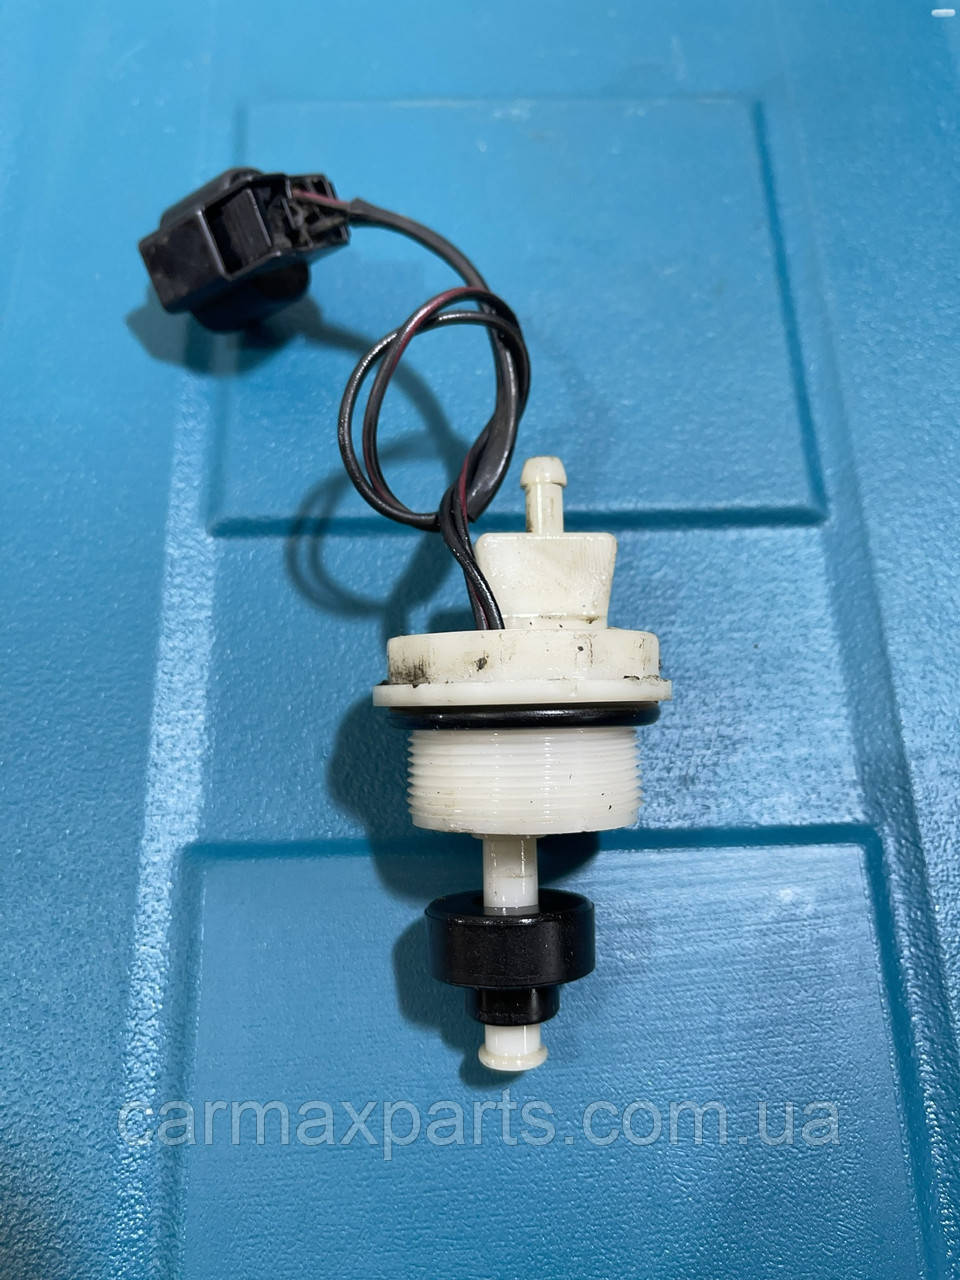 Mb658726. Датчик наличия воды в топливном фильтре. Датчик наличия воды в топливном фильтре МАЗ. Датчик наличия воды в топливе